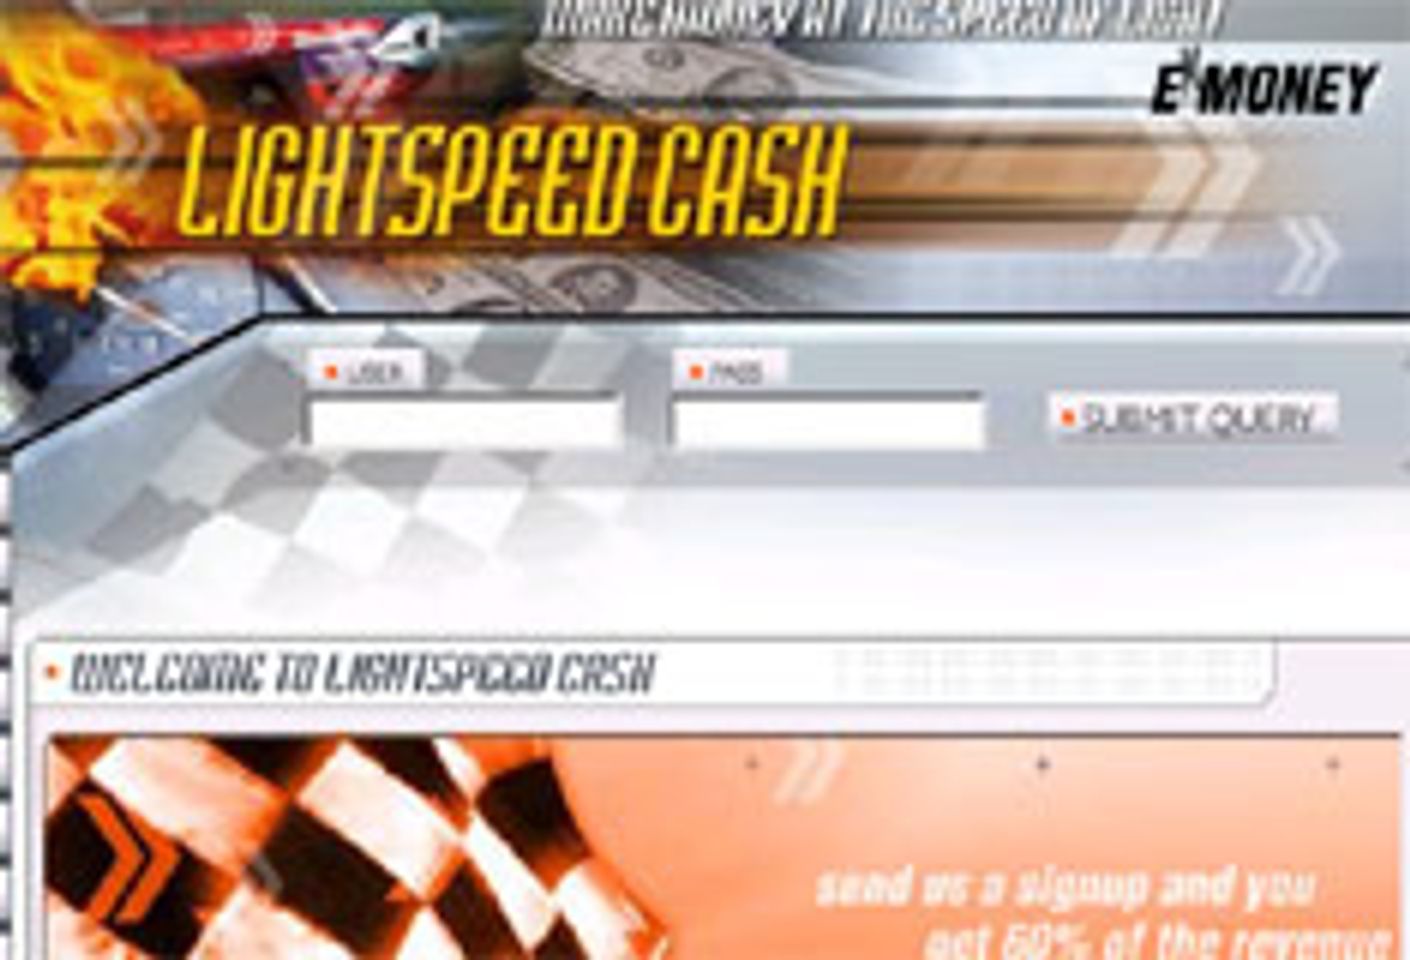 LightspeedCash.com Launches New Teen Site